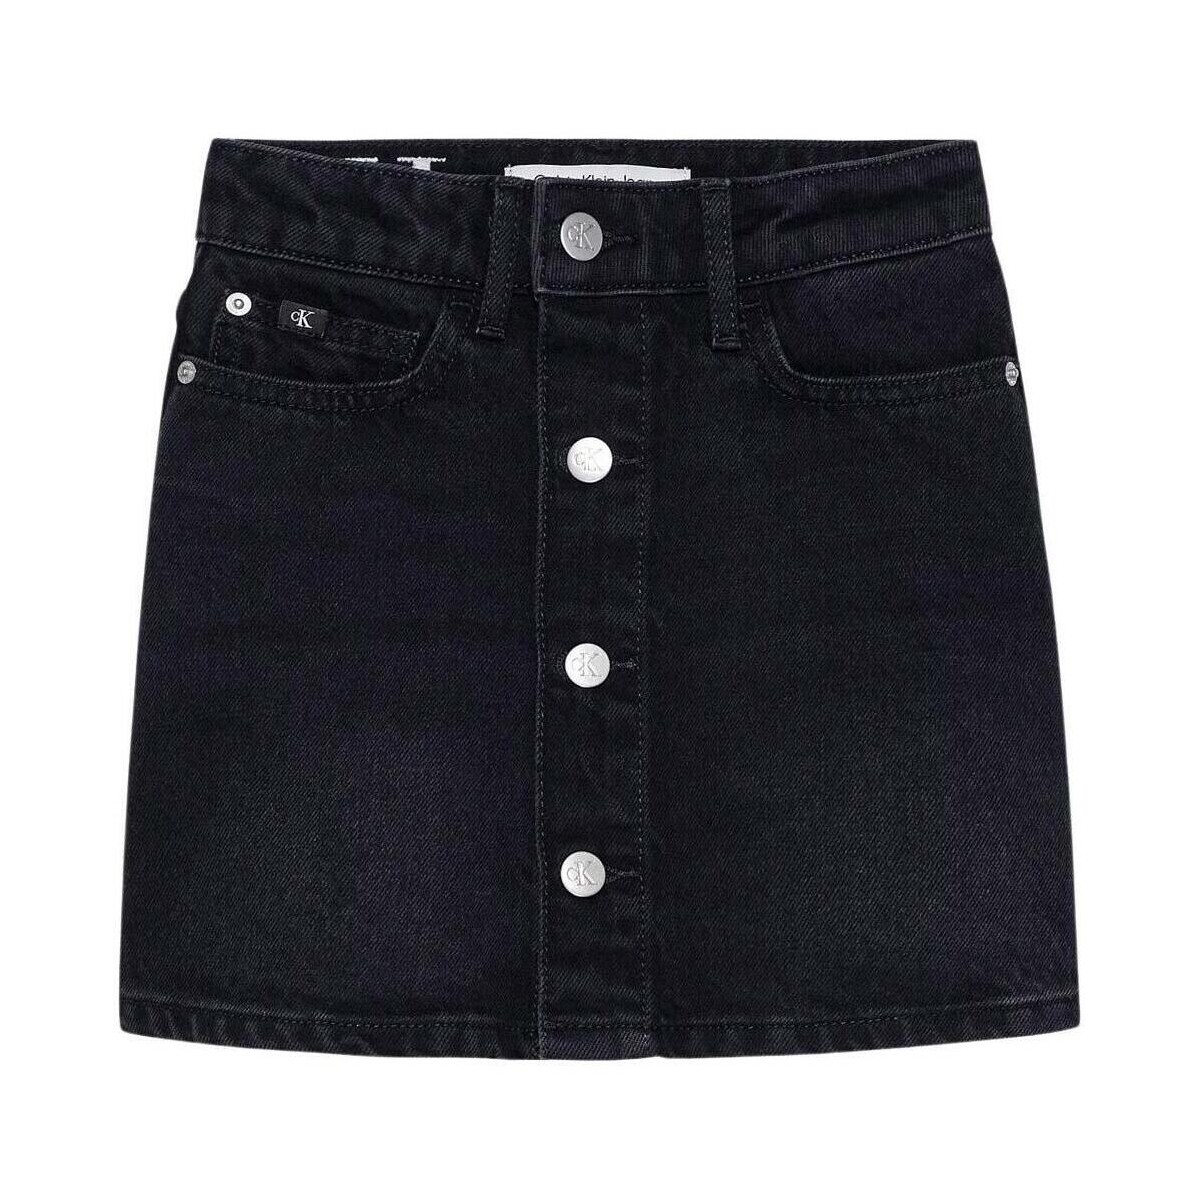 Vêtements Fille Shorts / Bermudas Calvin Klein Jeans  Noir